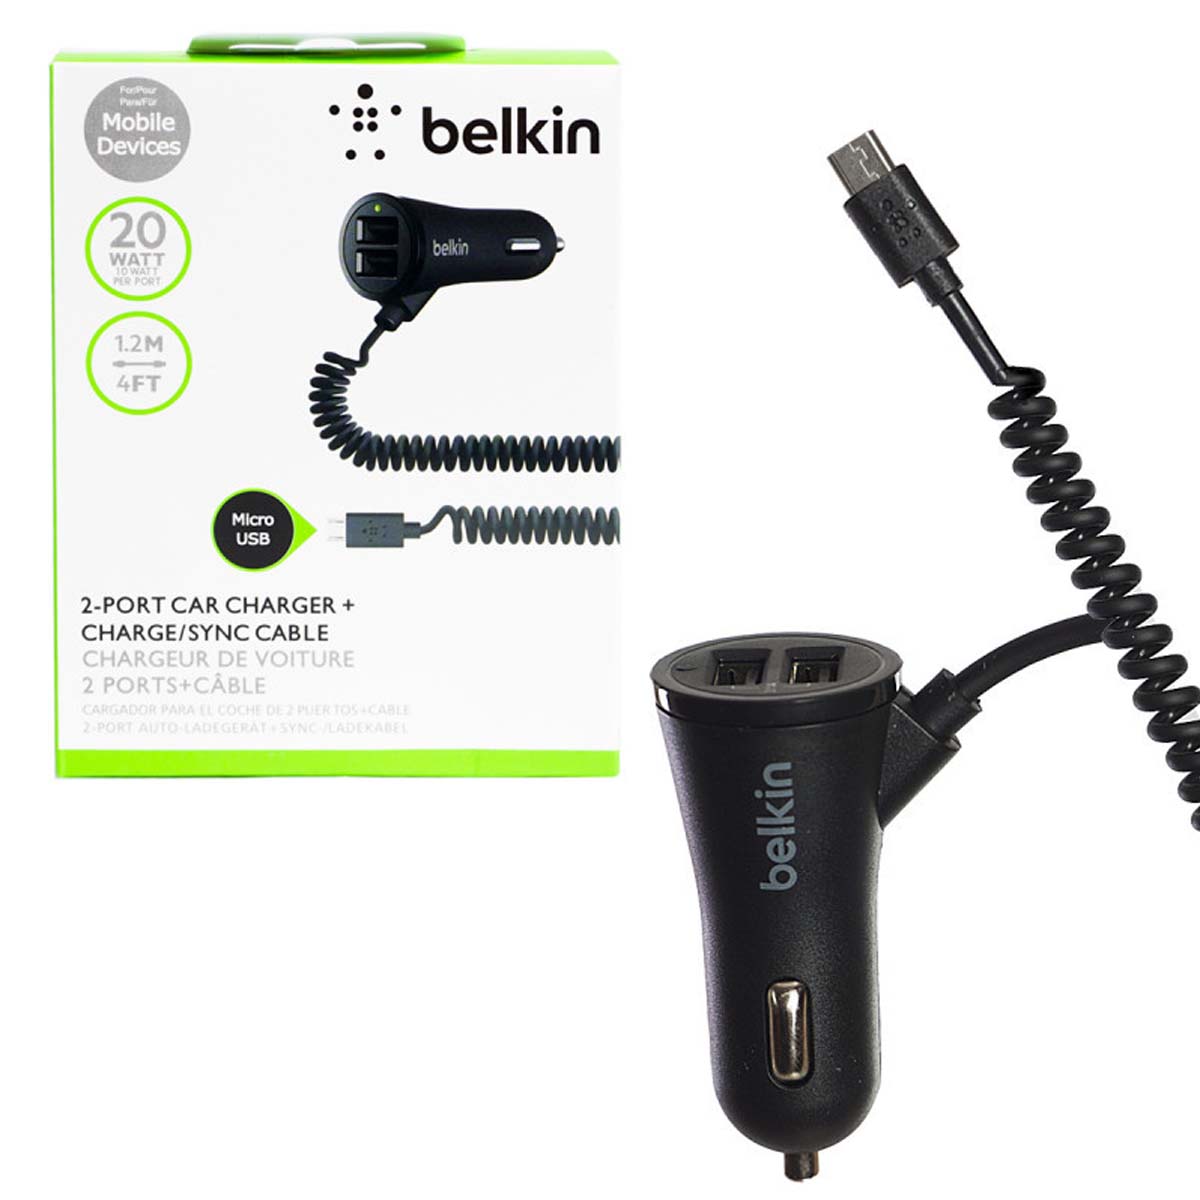 АЗУ (Автомобильное зарядное устройство) Belkin c кабелем Micro USB, 20W, 2 USB, цвет черный